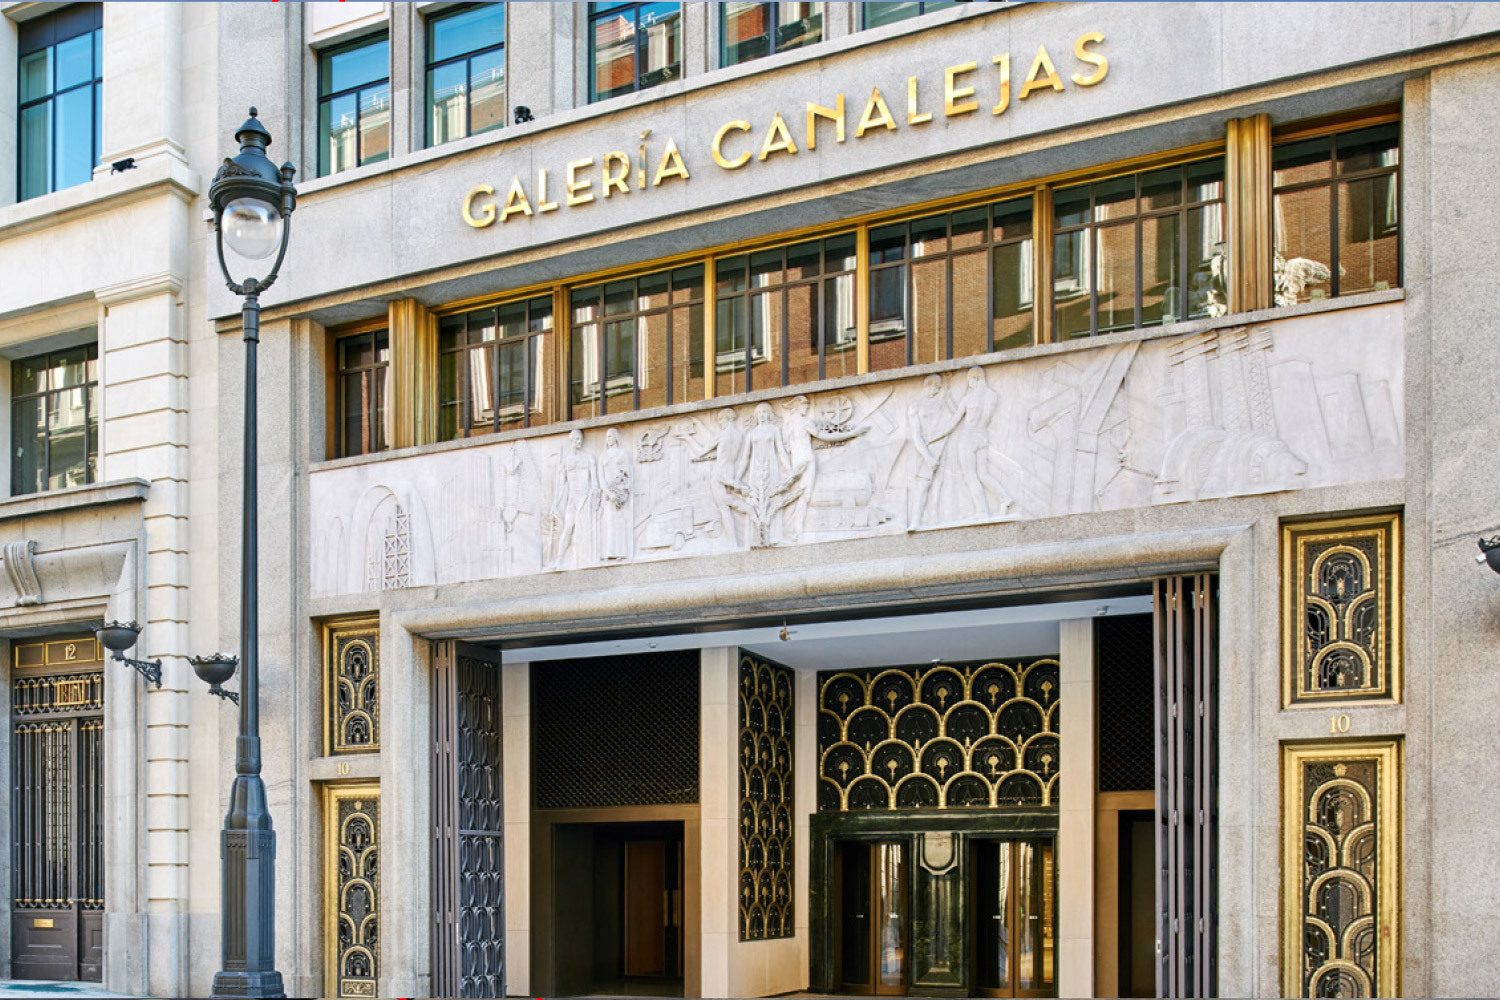 Galería Canalejas façade